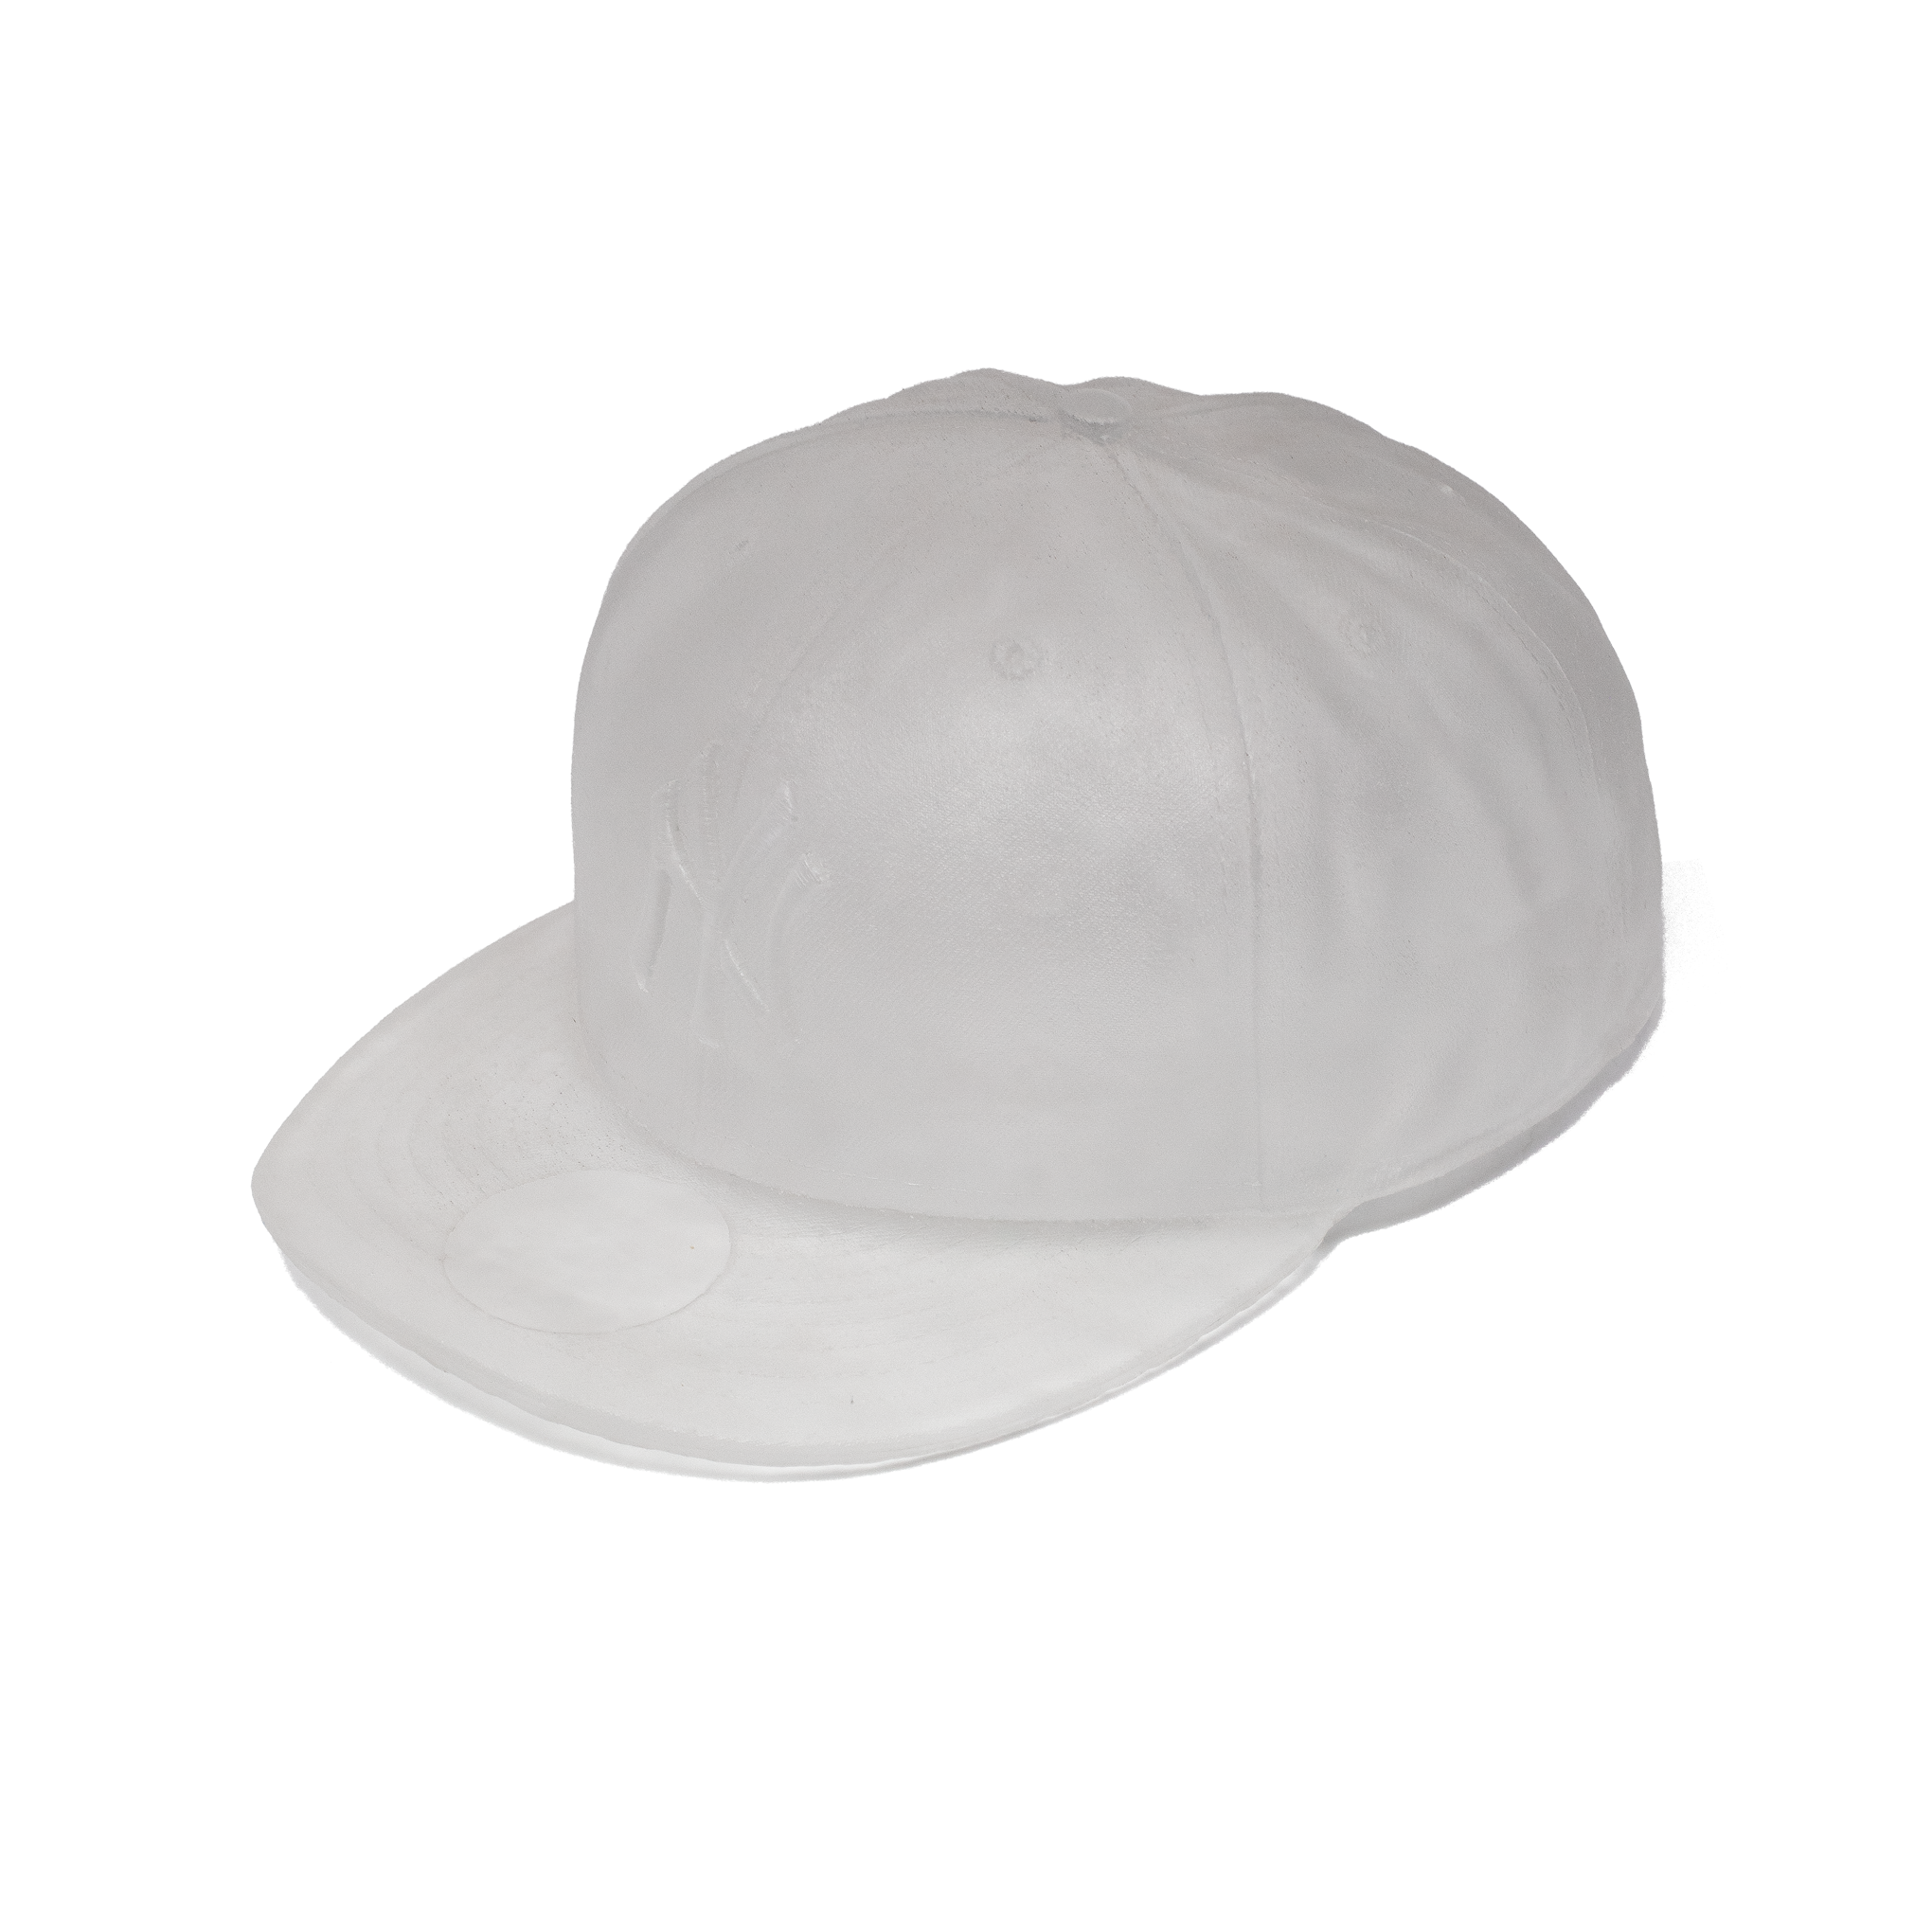 丹尼尔·阿尔轩水晶遗物 001 洋基队帽子透明